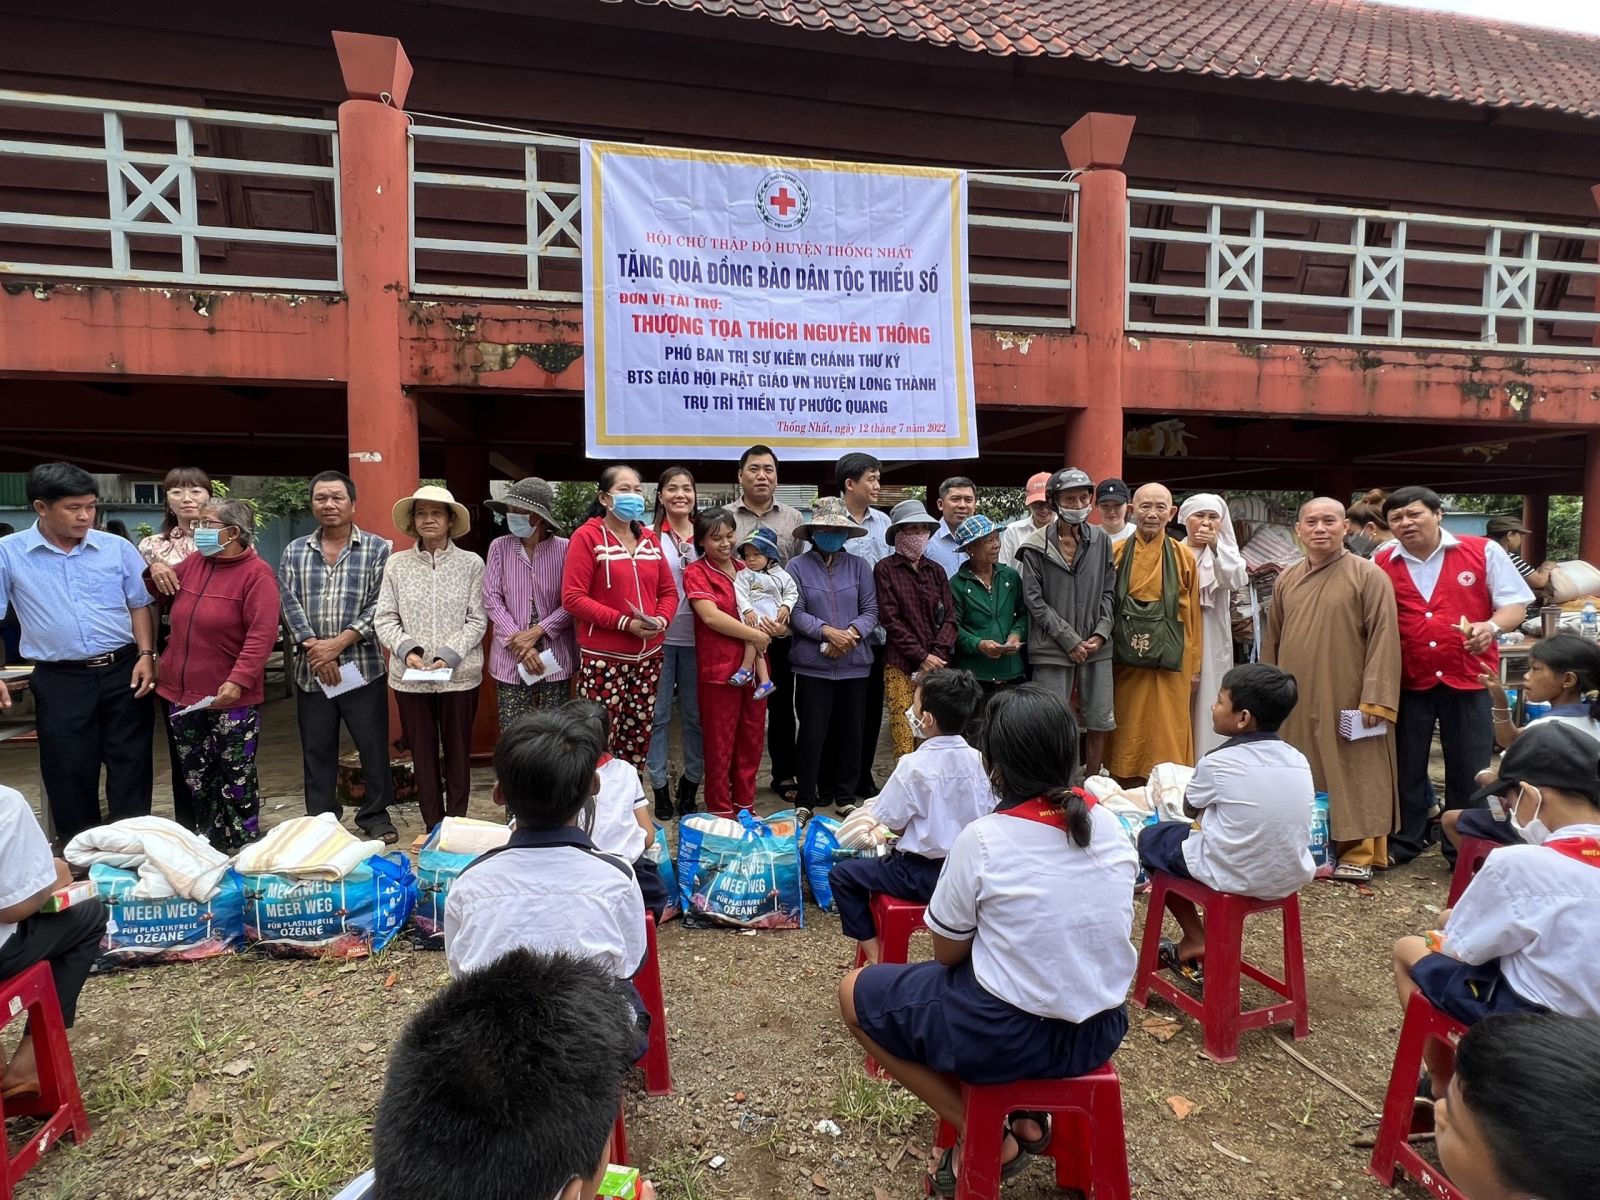 Đồng Nai: Thiền tự Phước Quang thăm và trao tặng 300 phần quà cho các hoàn cảnh khó khăn tại huyện Thống Nhất